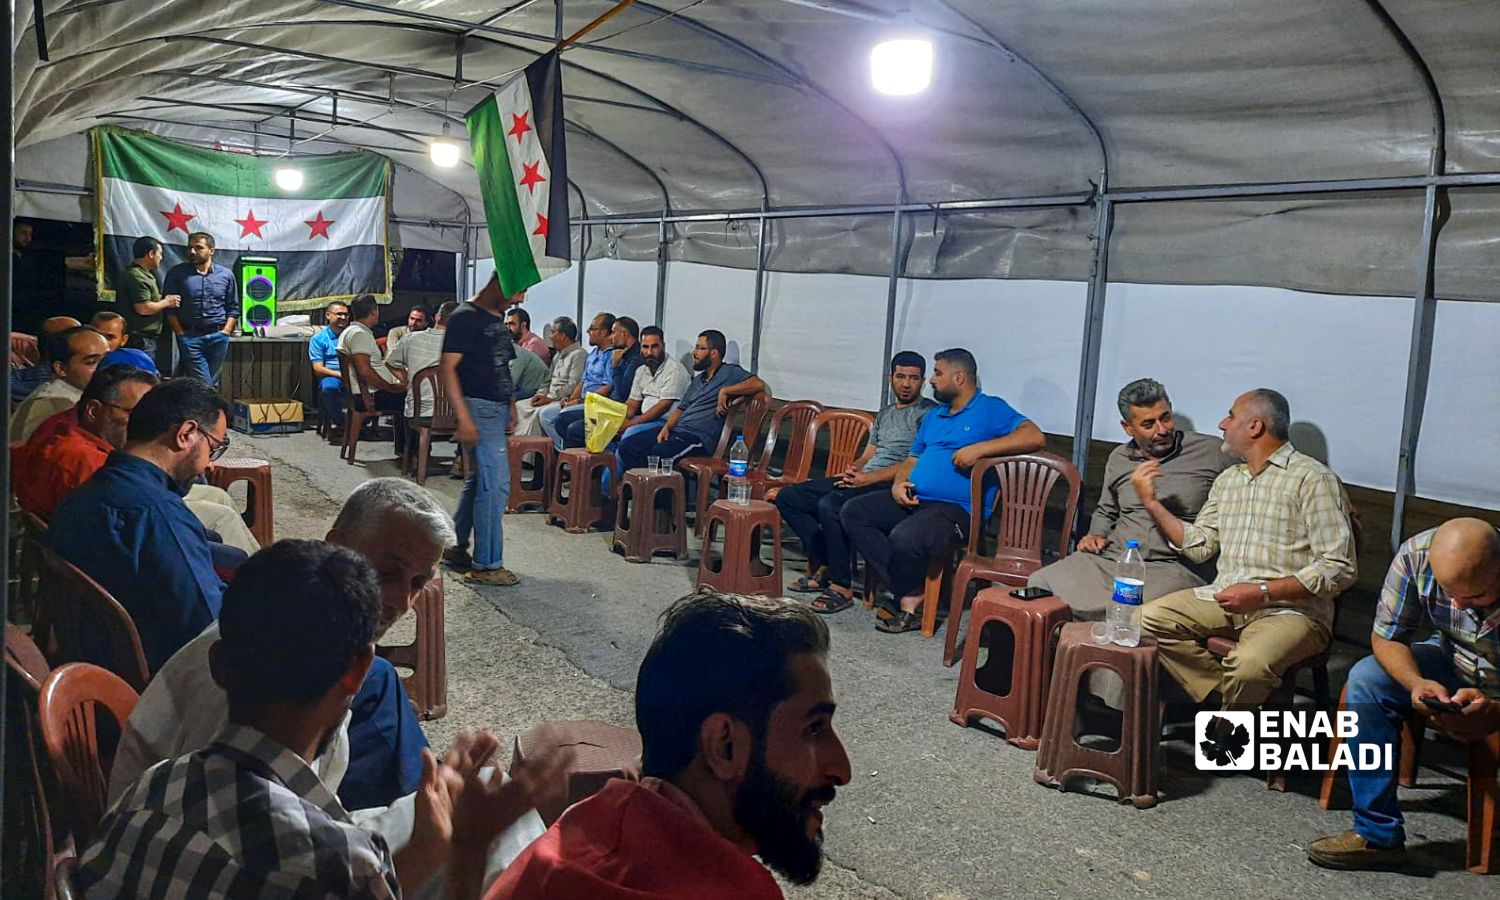 معلمون يعتصمون داخل خيمة أمام مديرية التربية بمدينة الباب بريف حلب الشرقي للمطالبة بحقوقهم- 3 من تشرين الأول 2022 (عنب بلدي)